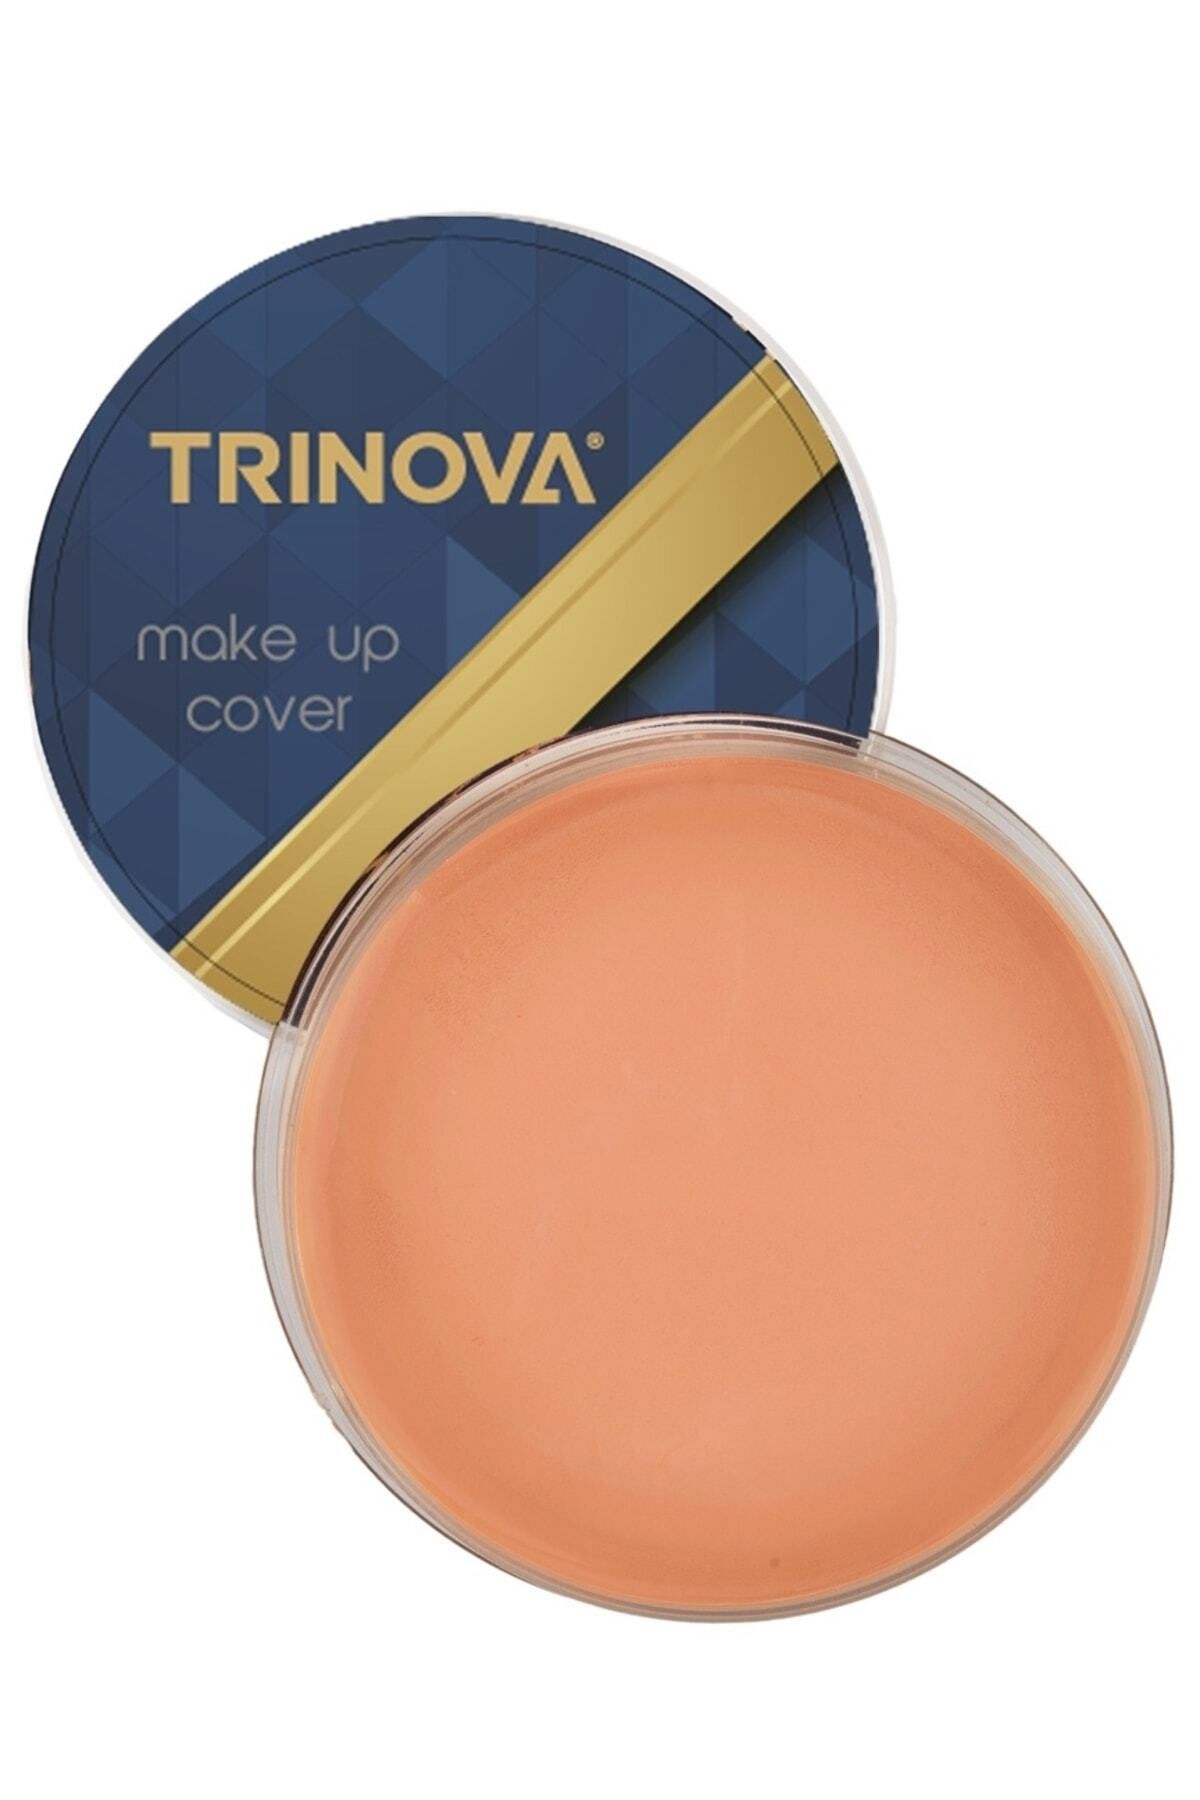 Trinova Makeup Cover Porselen Fondöten Orta Ton